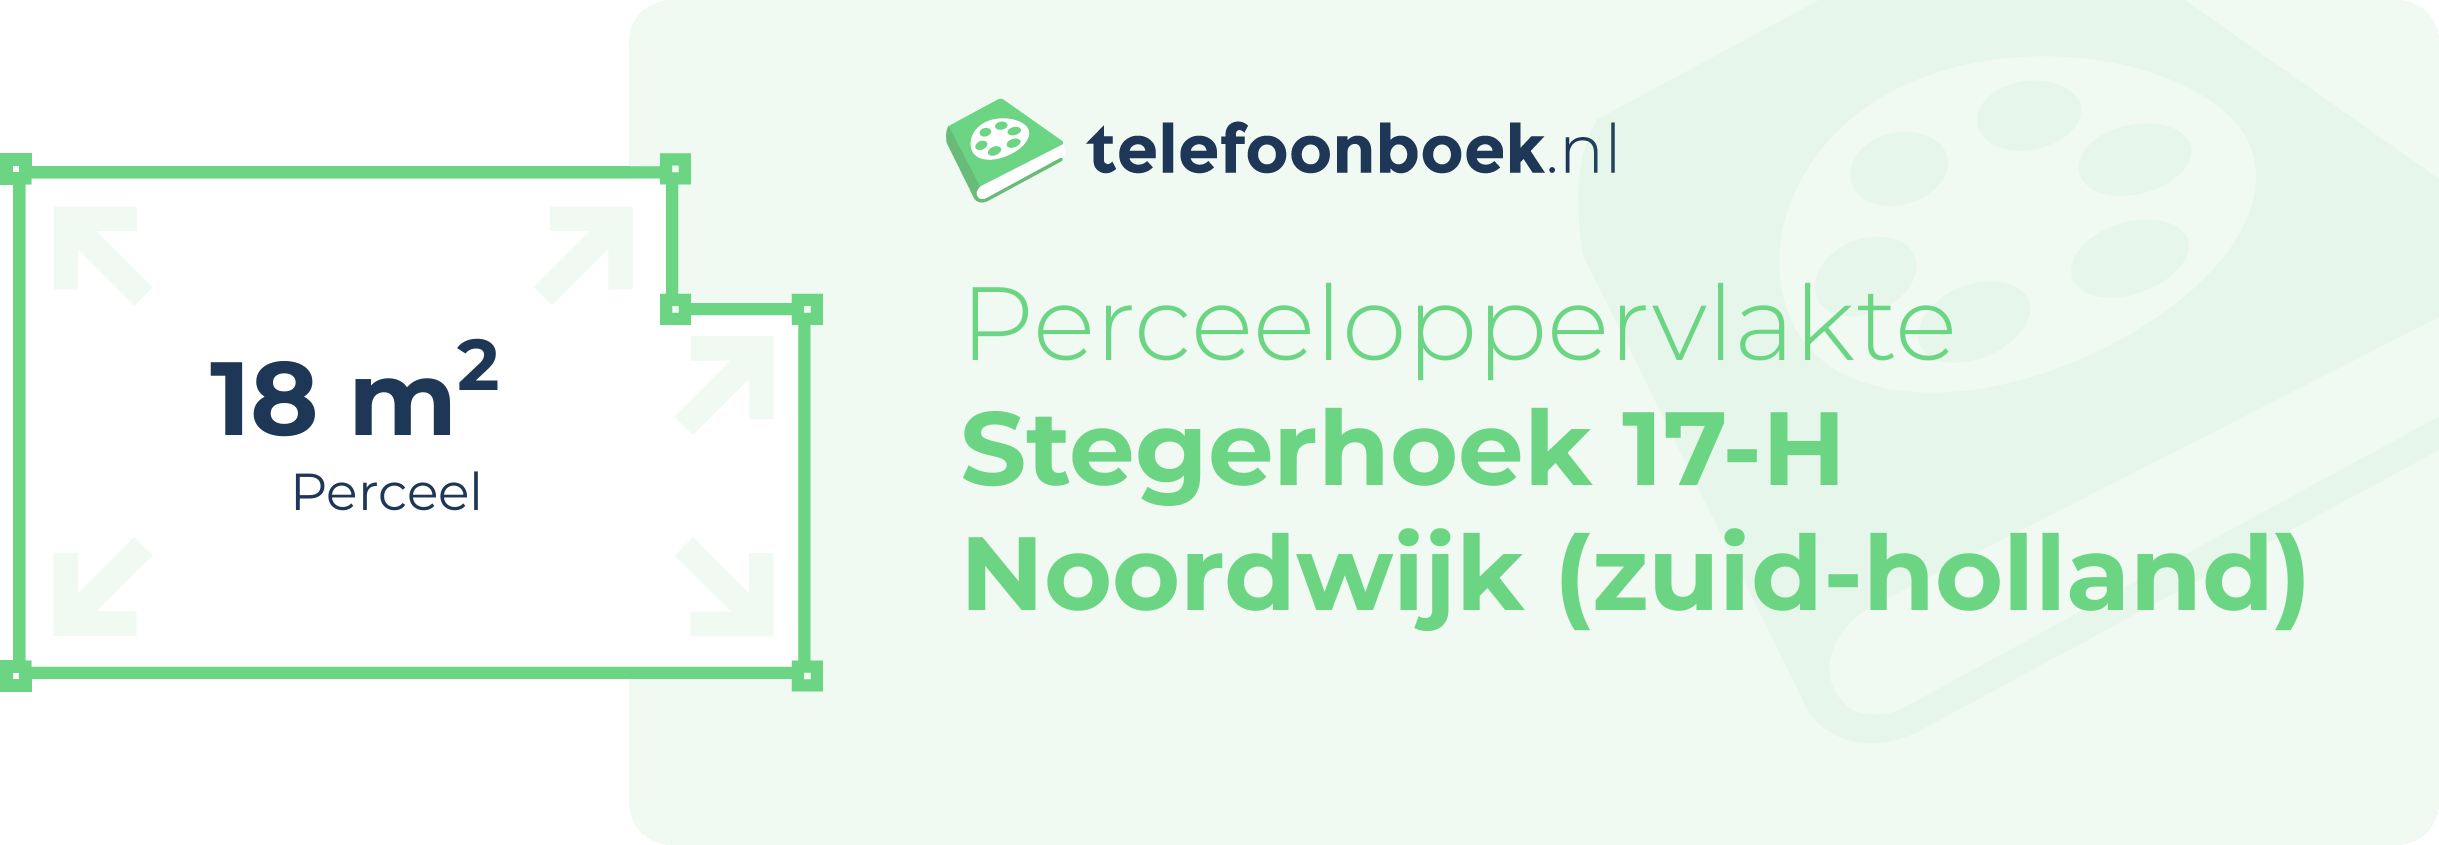 Perceeloppervlakte Stegerhoek 17-H Noordwijk (Zuid-Holland)